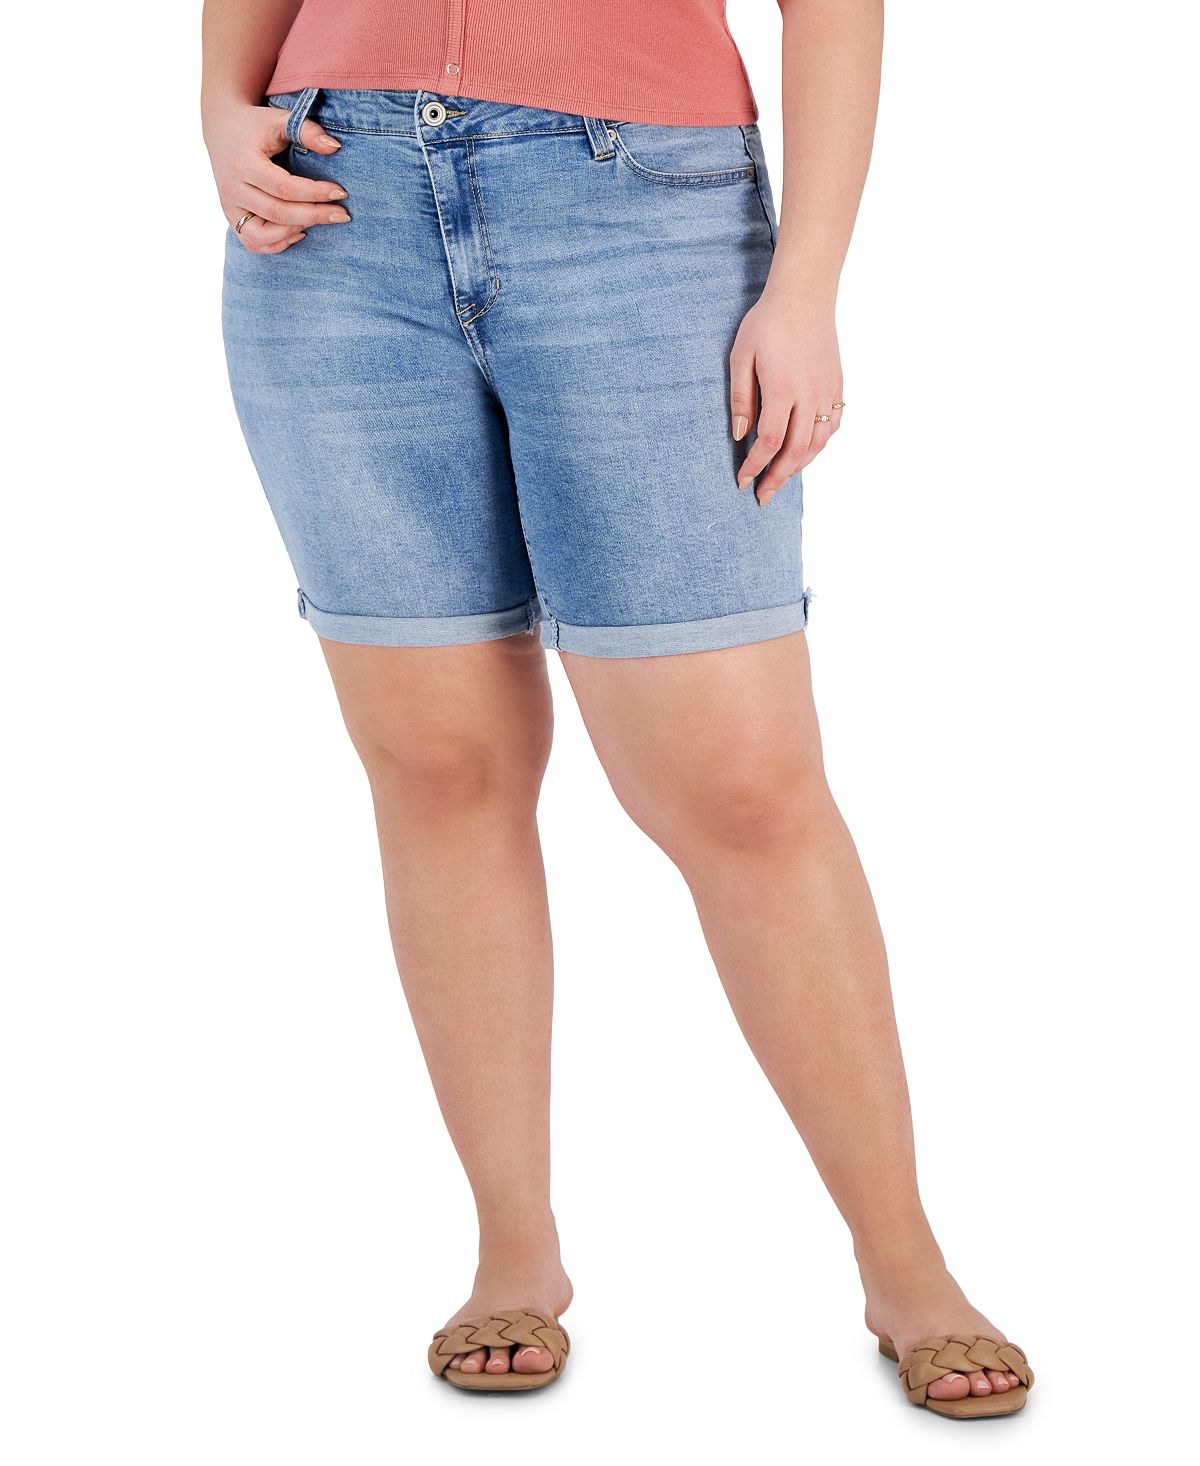 Модные джинсовые шорты-бермуды больших размеров с манжетами Celebrity Pink цена и фото